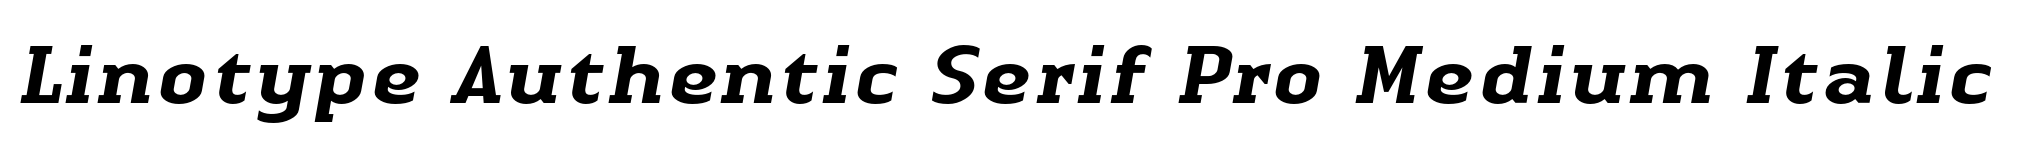 Linotype Authentic Serif Pro Medium Italic image